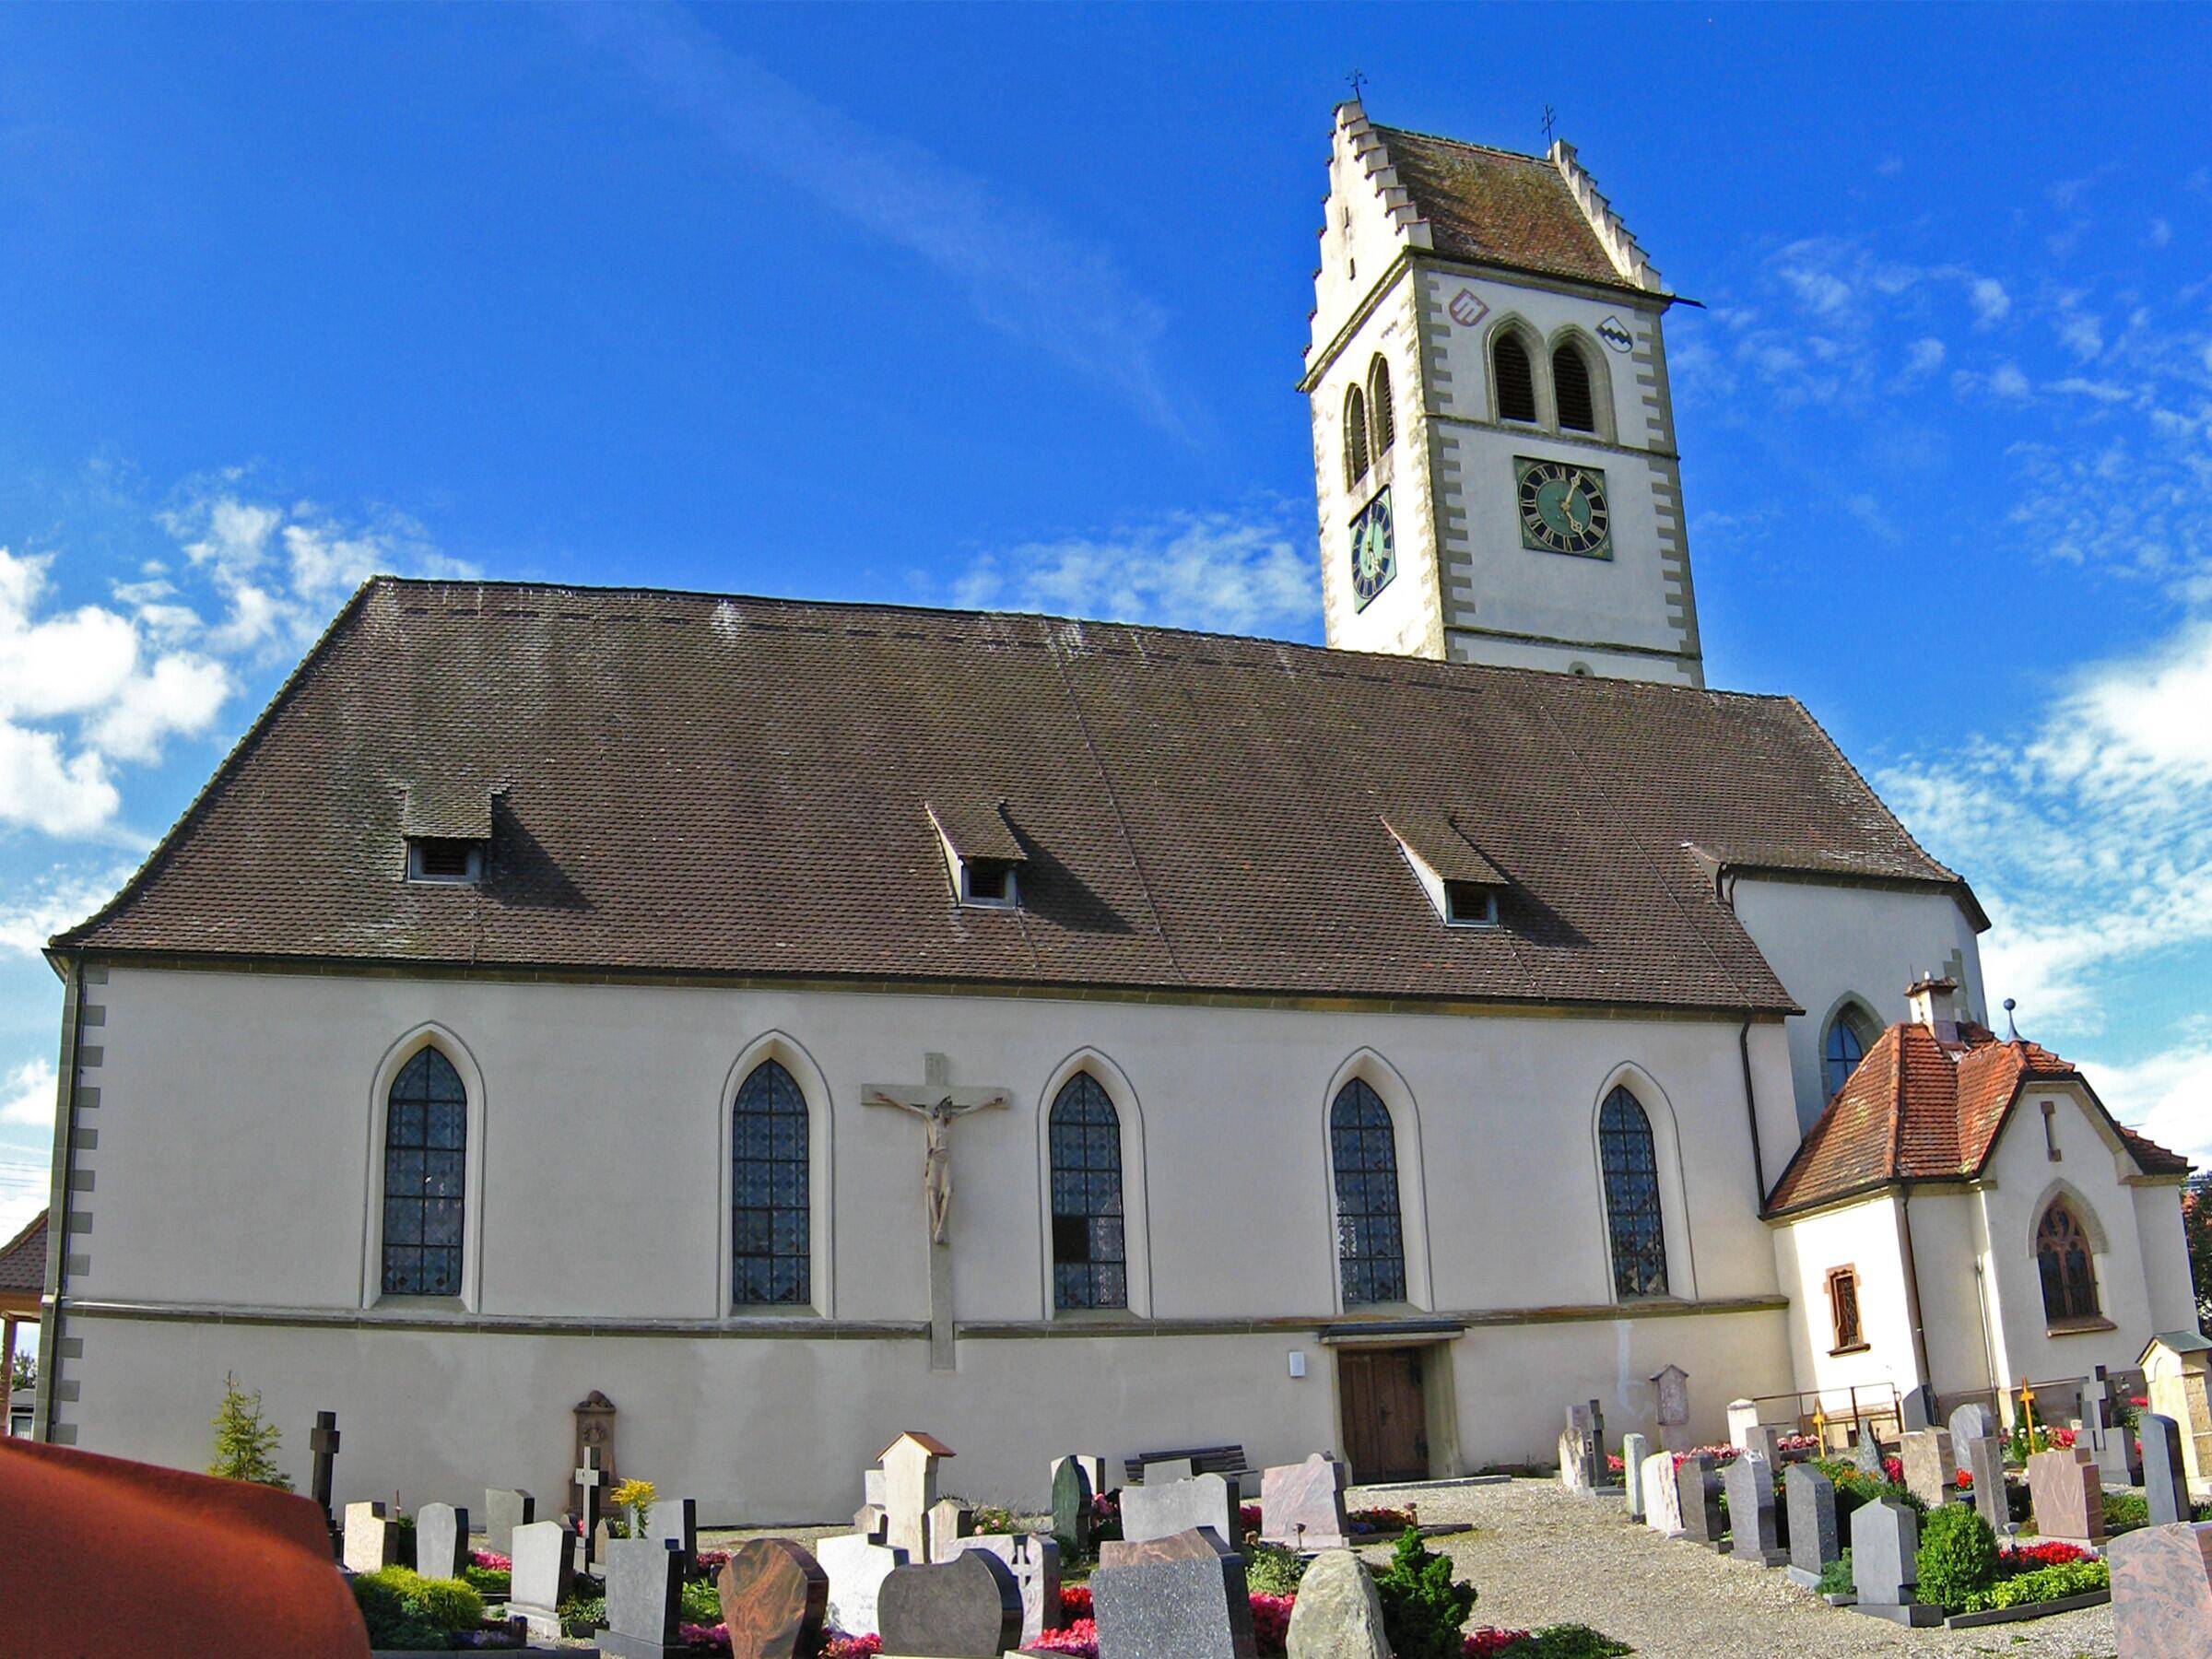 Umgebung - Kirche St. Martin Frickingen